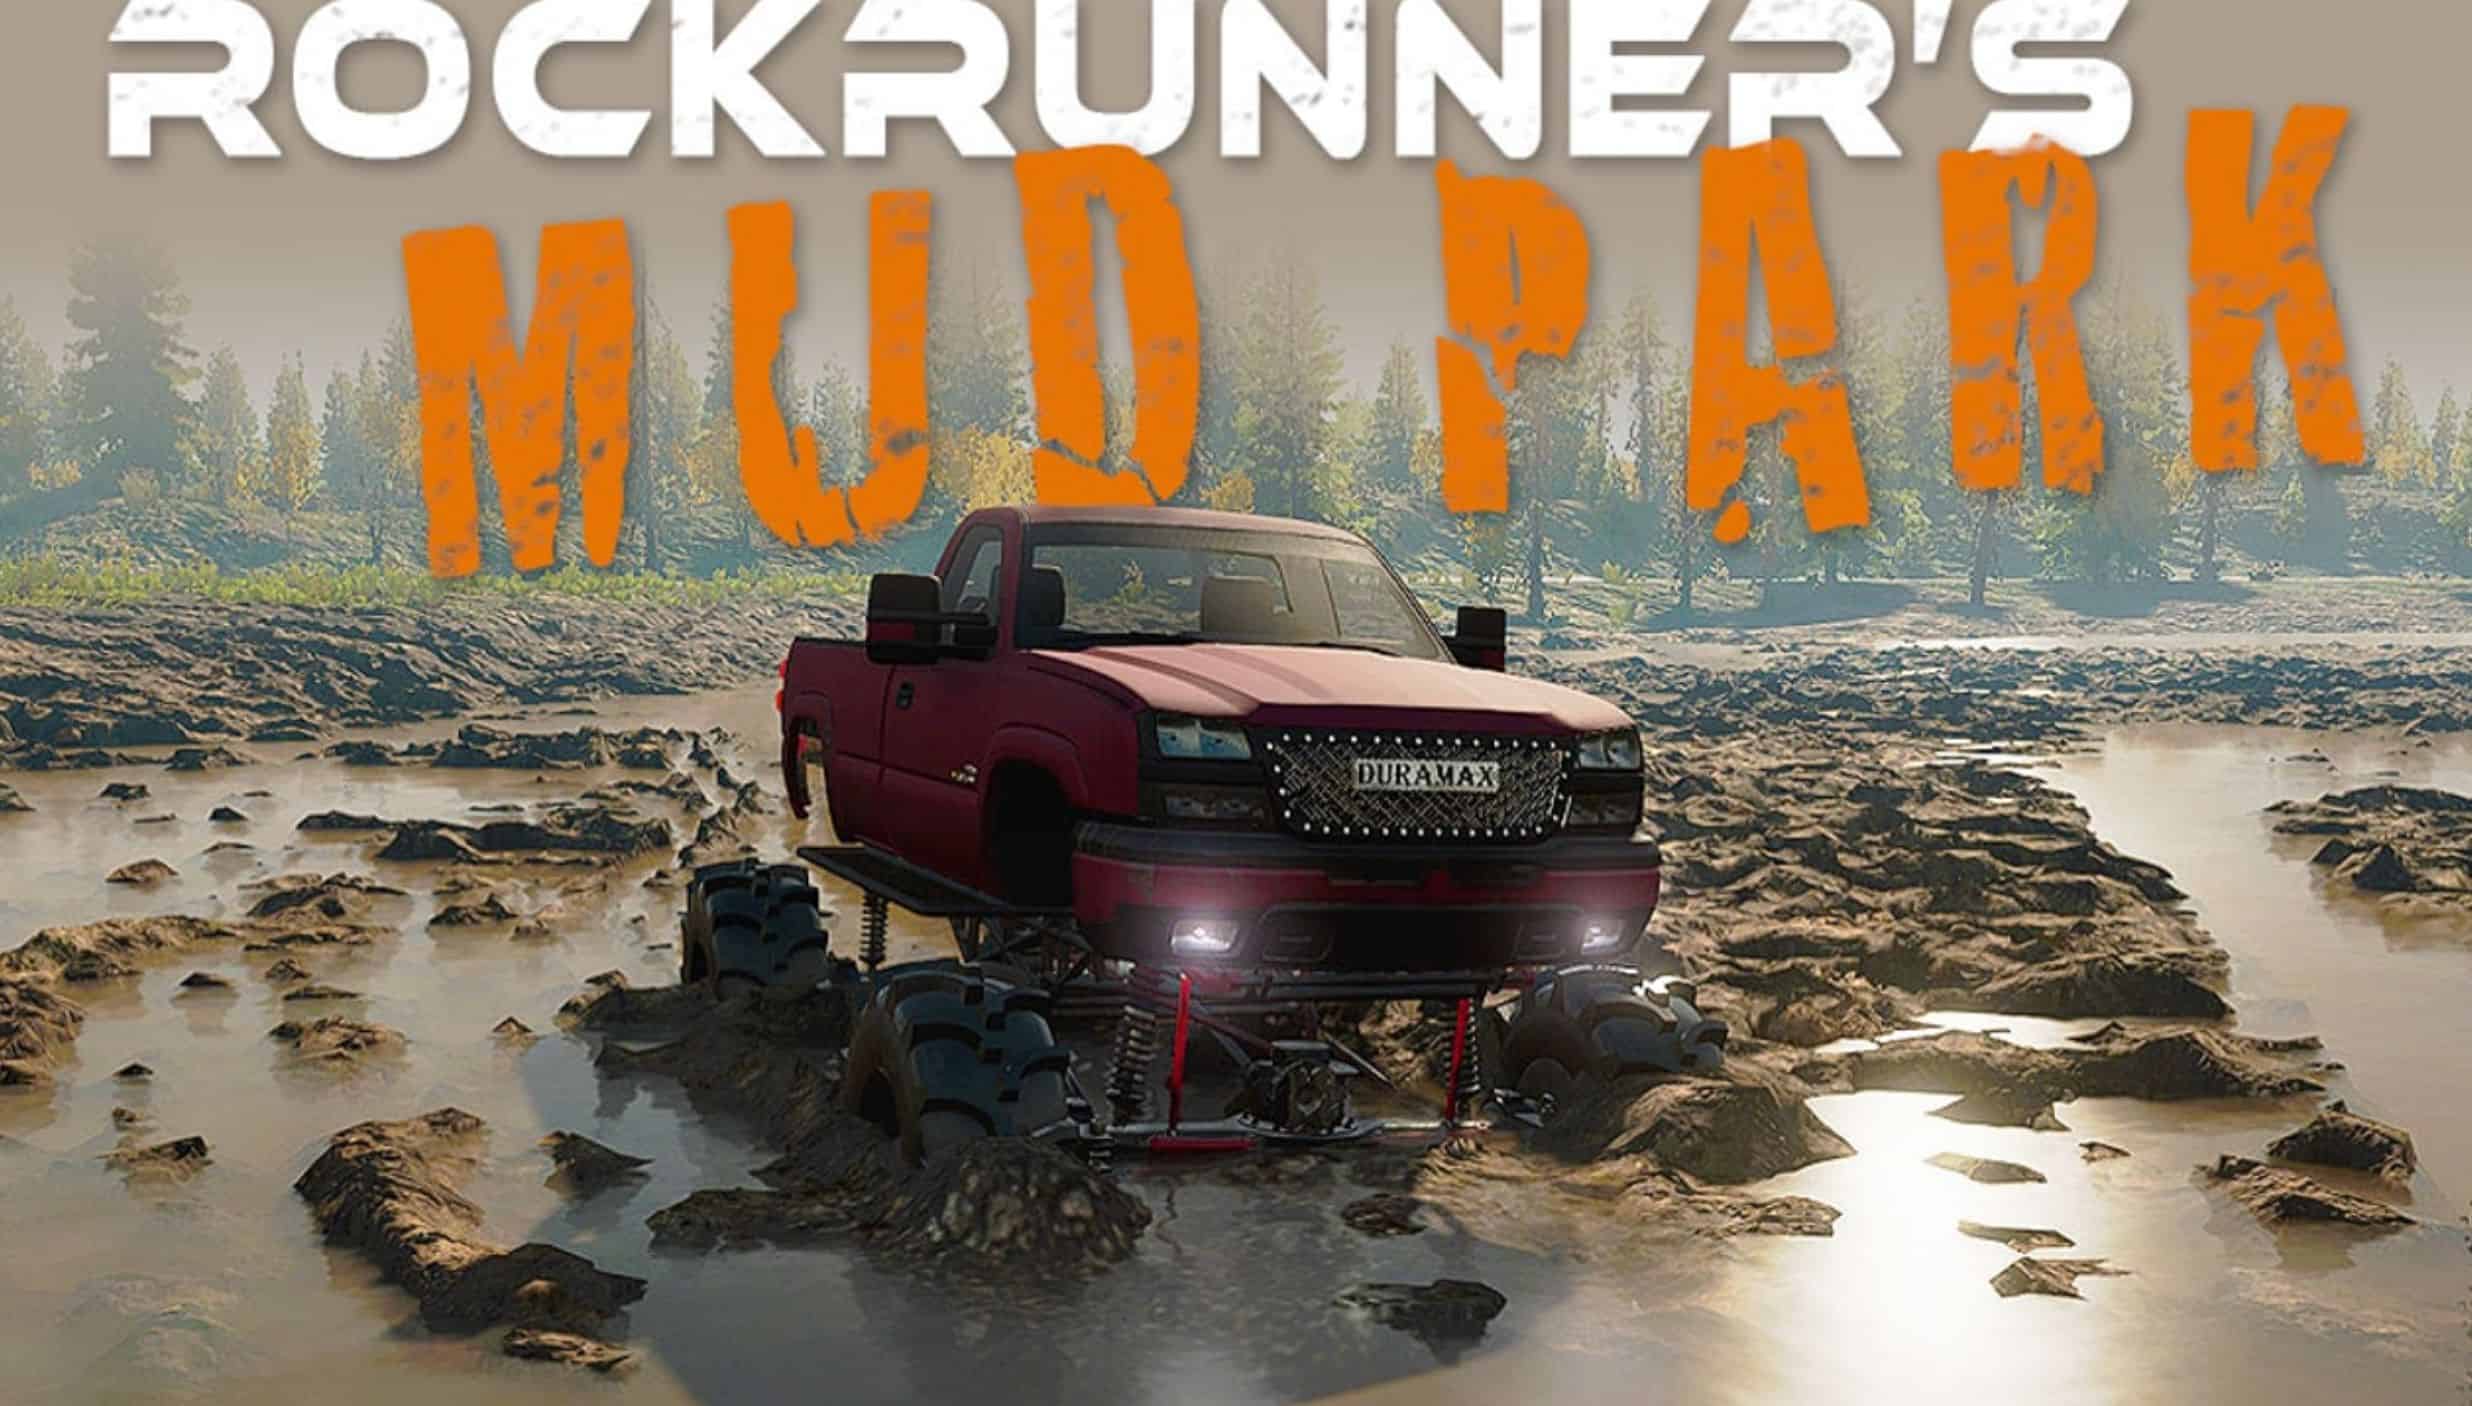 SnowRunner - Rockrunners Mud Park V1.1